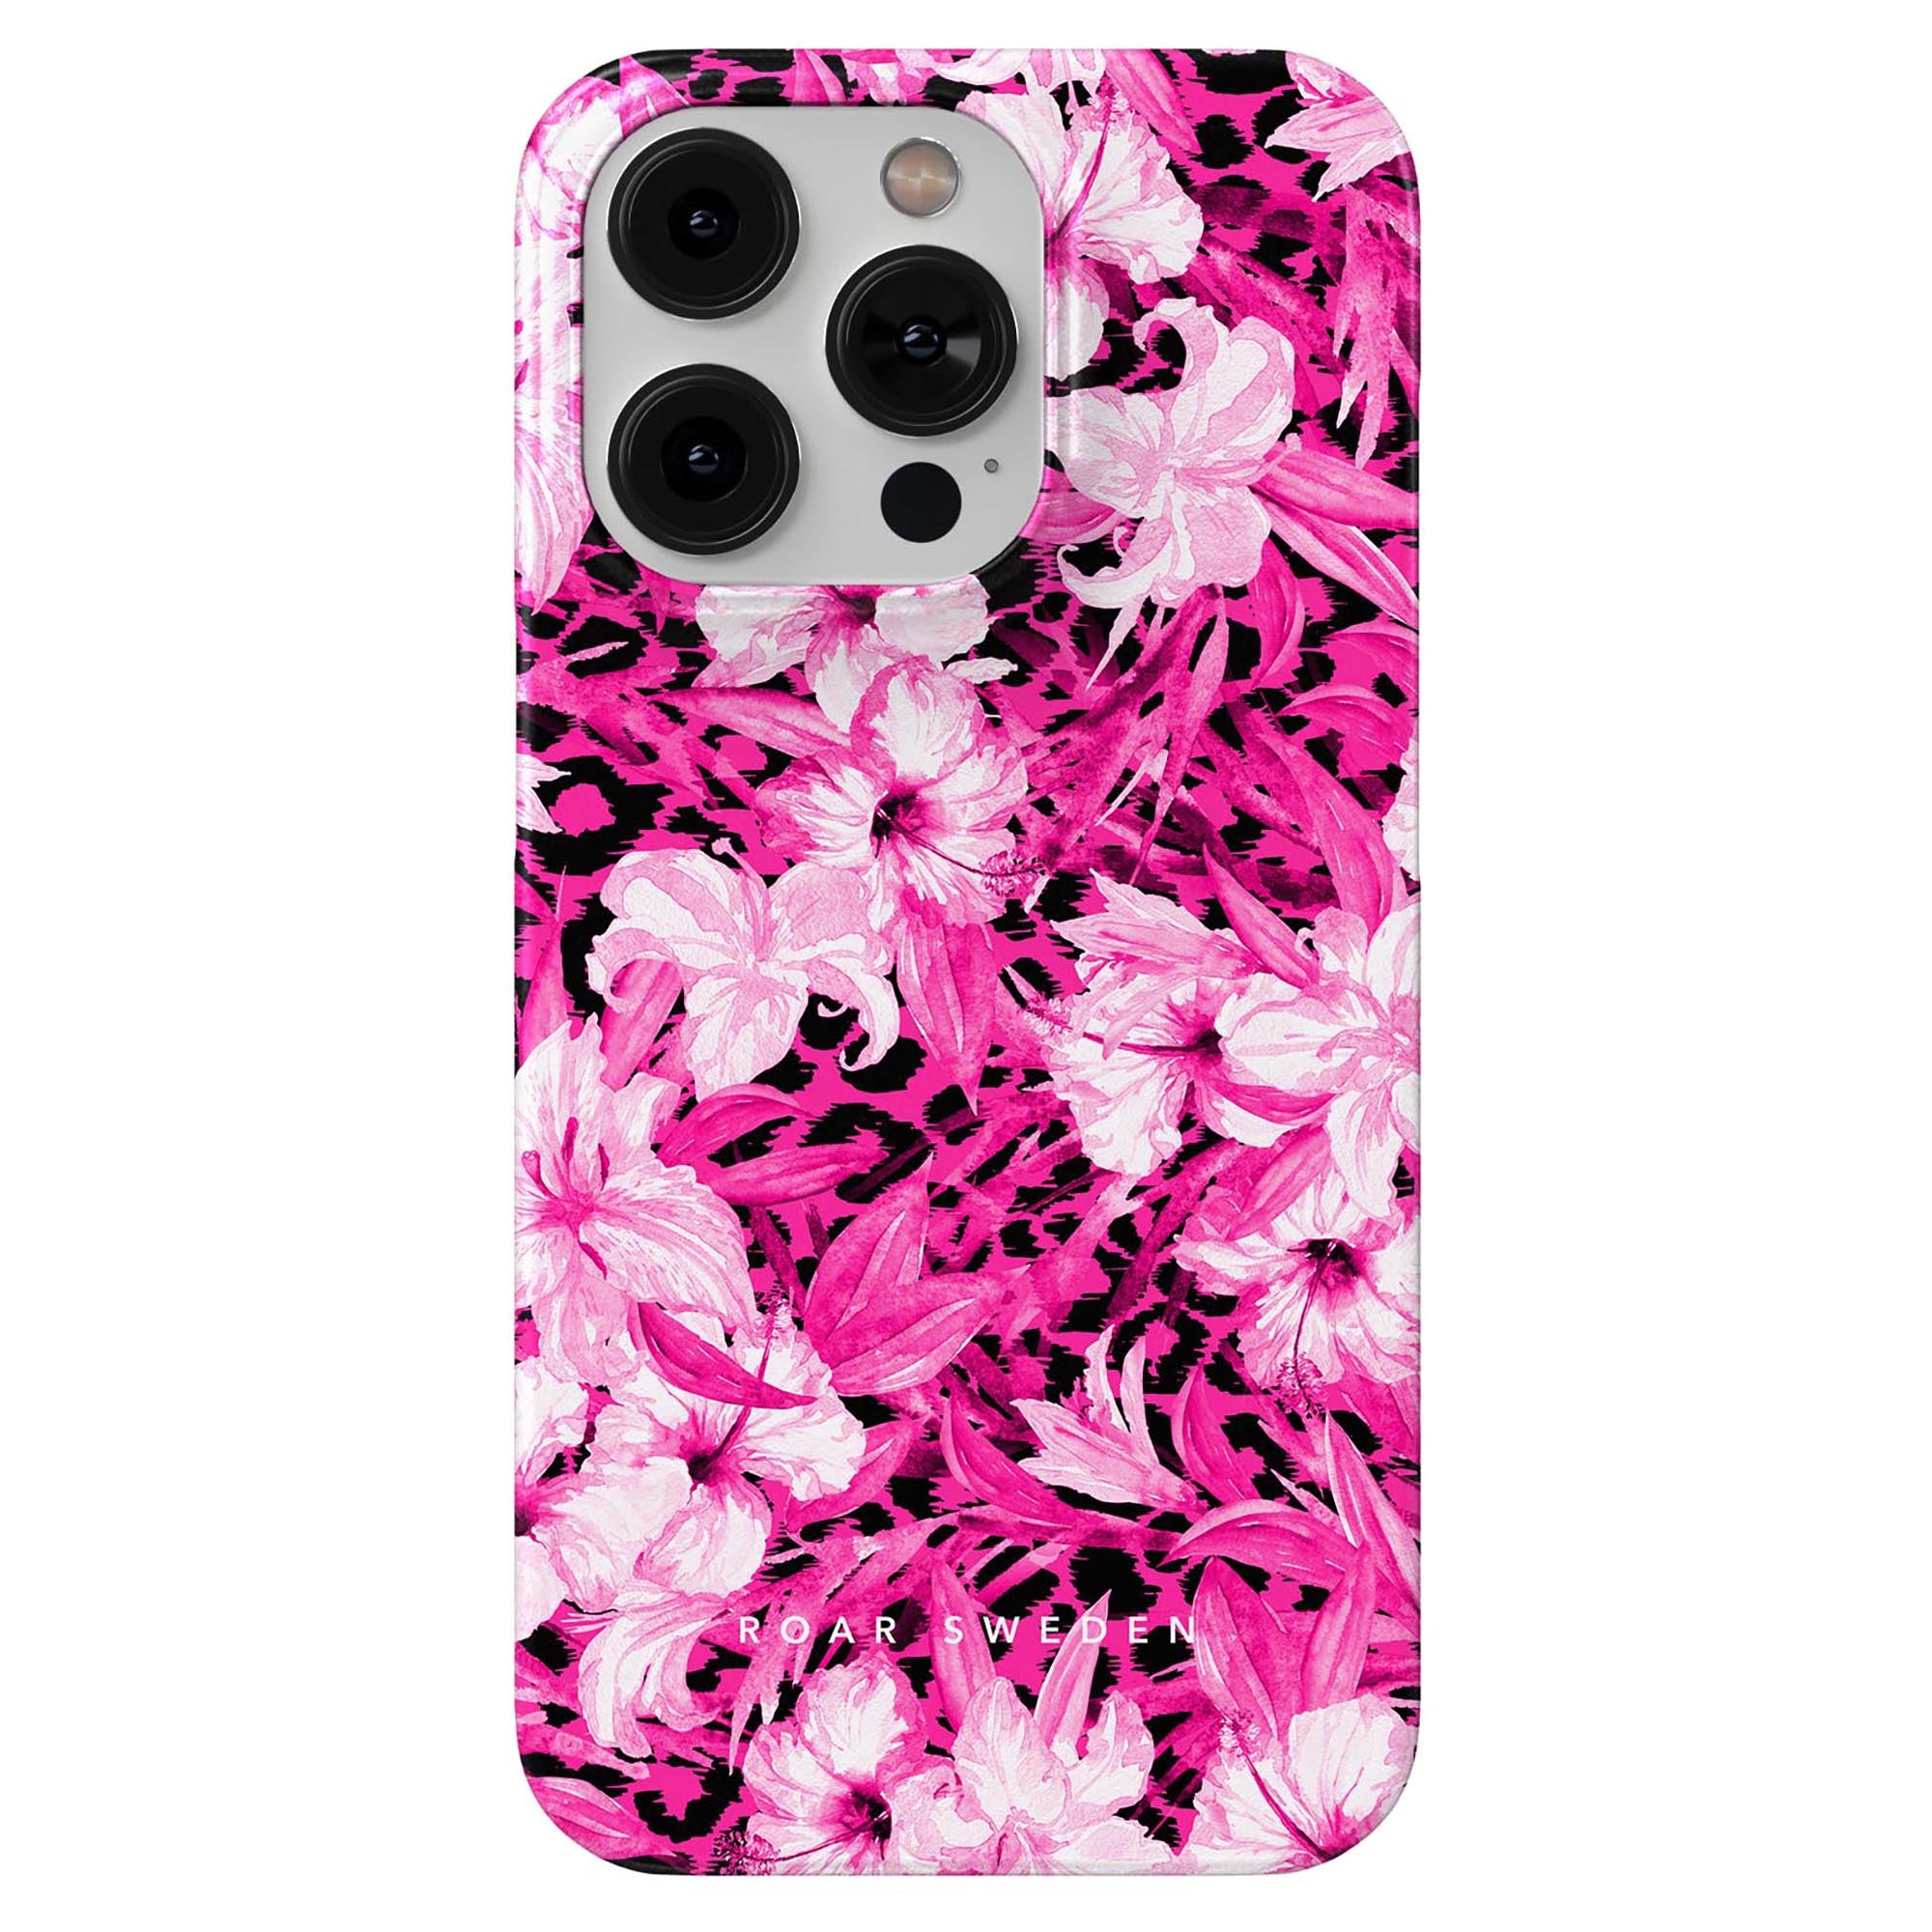 Ett smartphonefodral kallat Hibiscus Leo - Slimfodral, med en blandning av rosa och svarta färger prydda med hibiskusblommor.